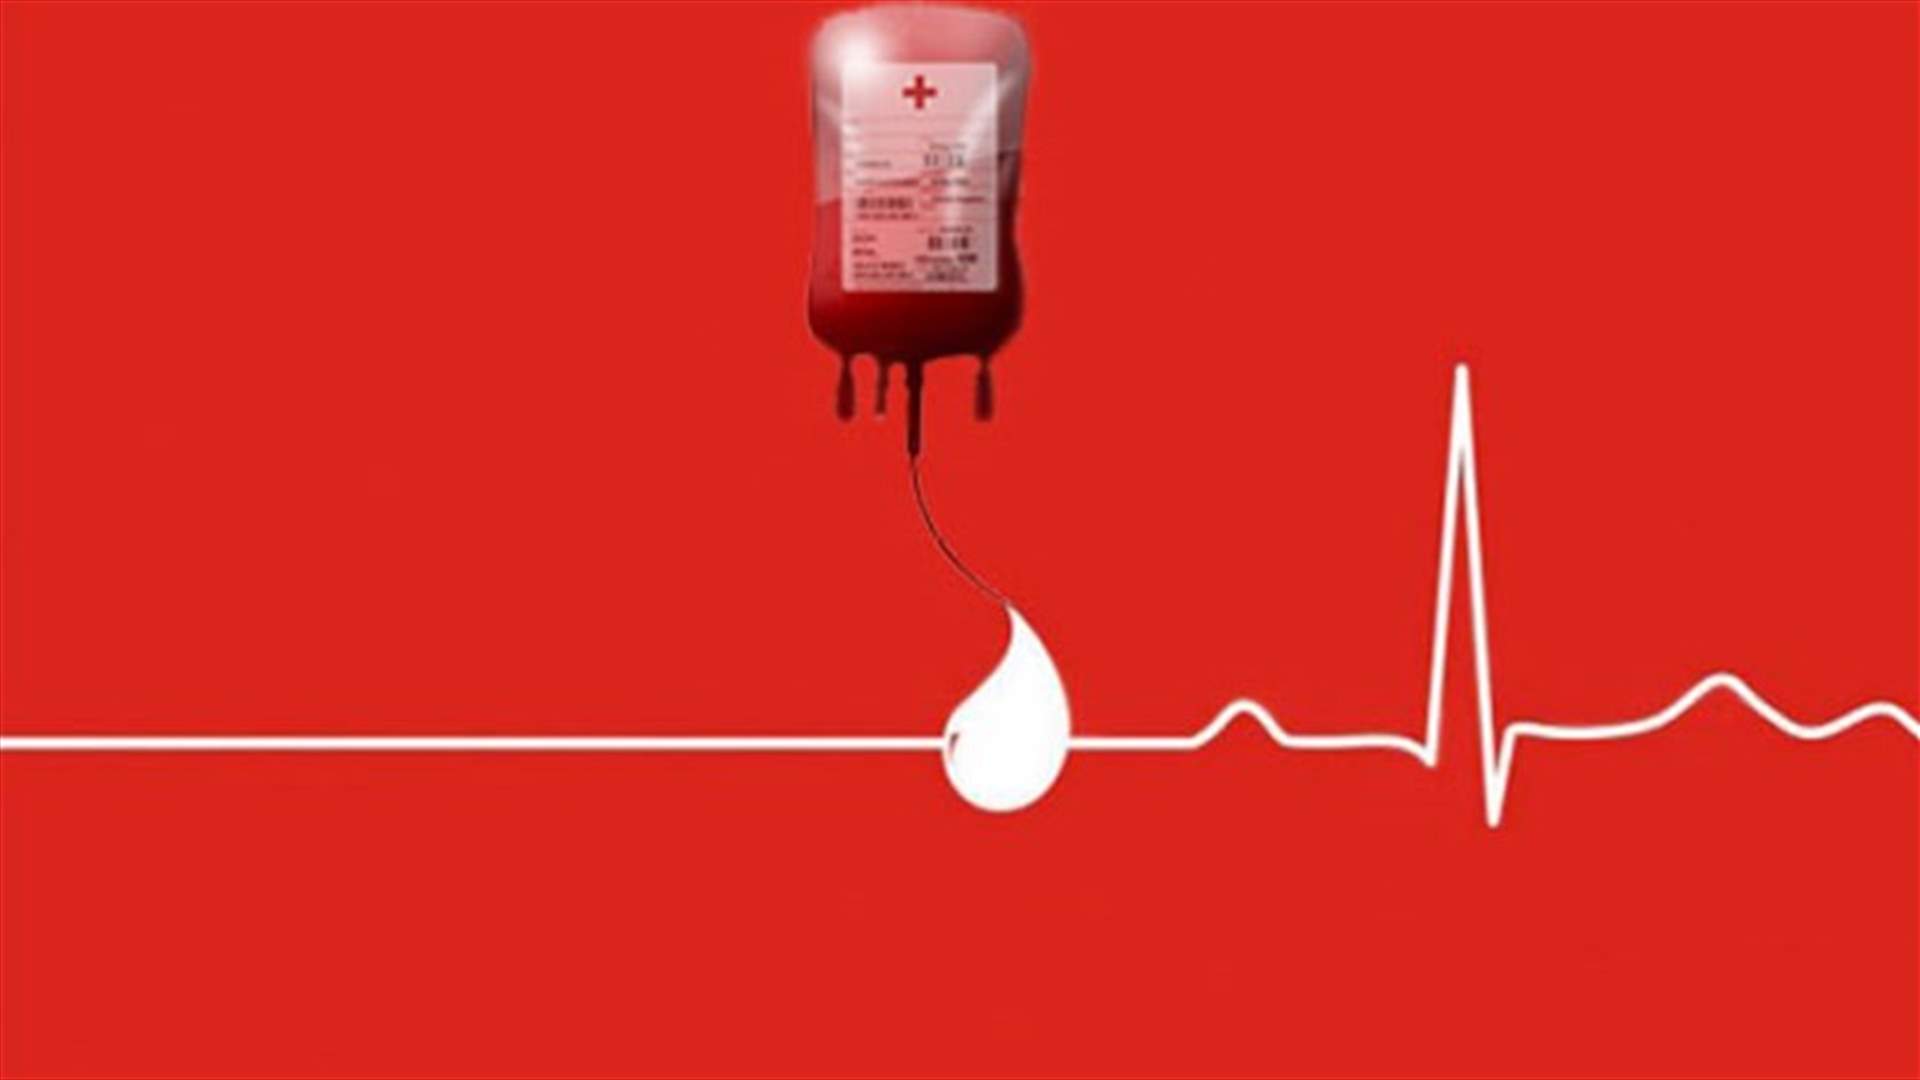 مريض في مستشفى المعونات في جبيل بحاجة ماسة الى دم من فئة B+ ... للتبرع الاتصال على: 76064802